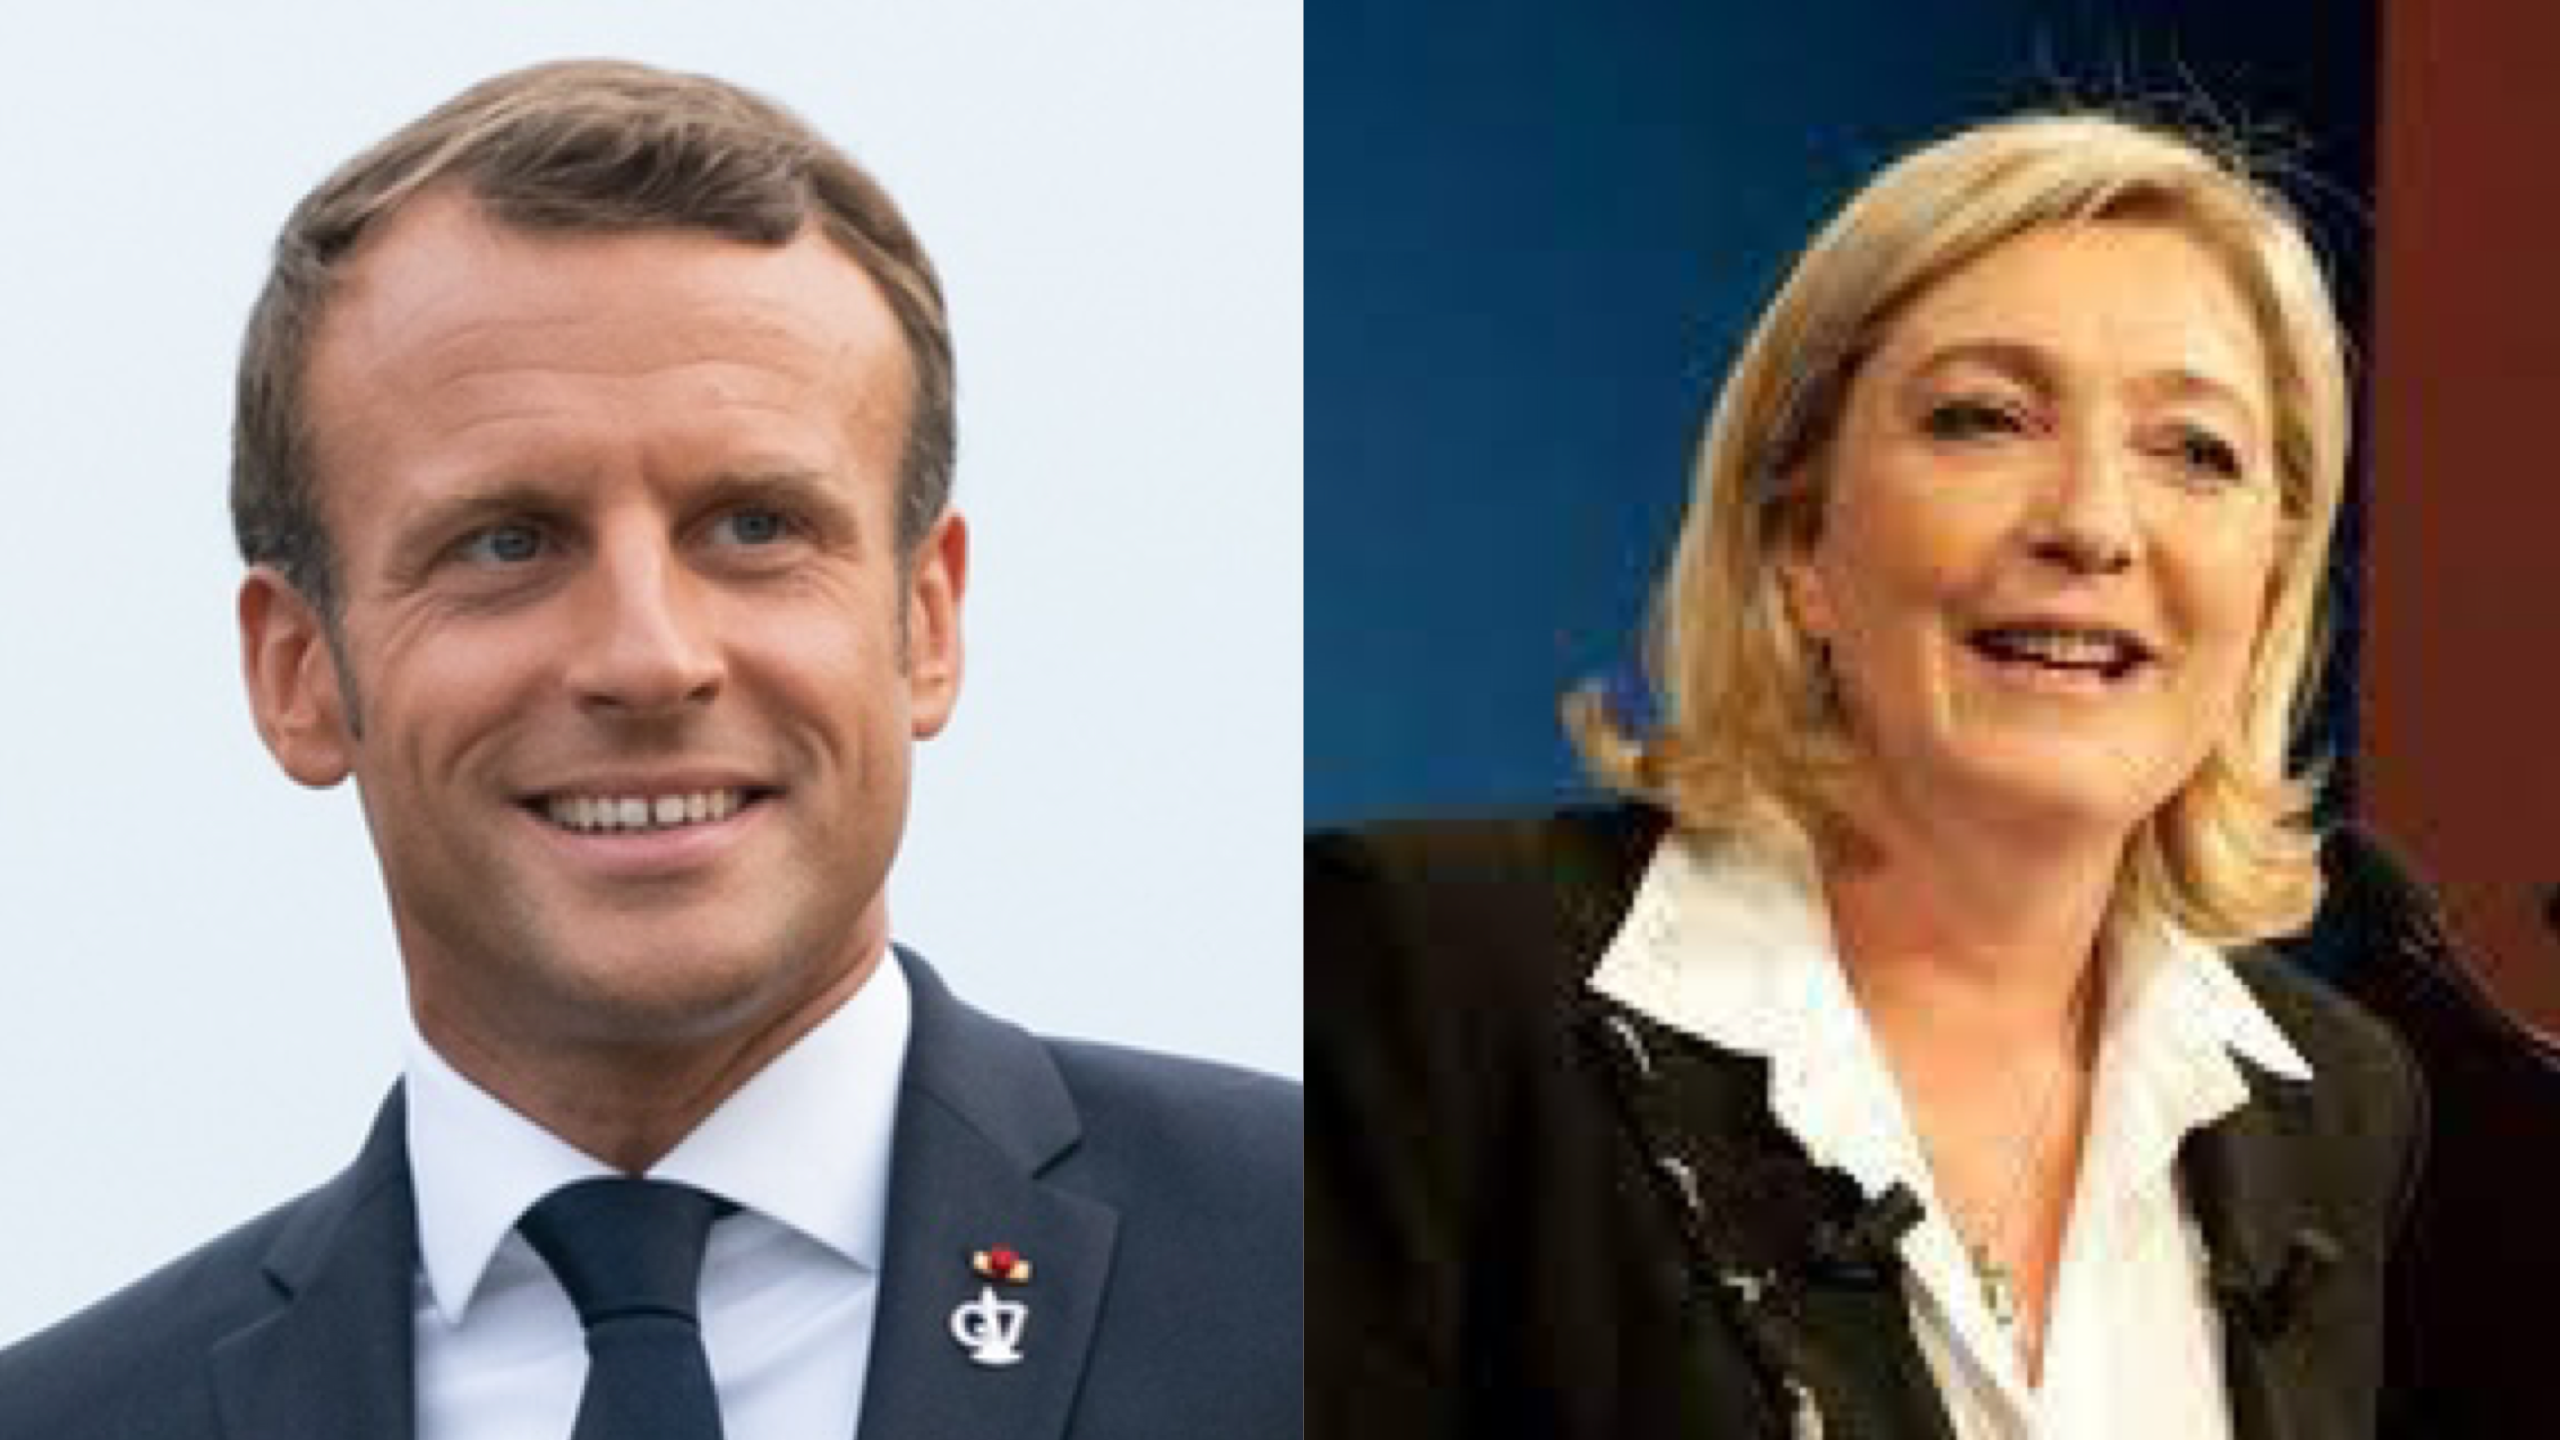 Comme en 2017, Emmanuel Macron et Marine Le Pen s'affronteront au deuxième tour le 24 avril.